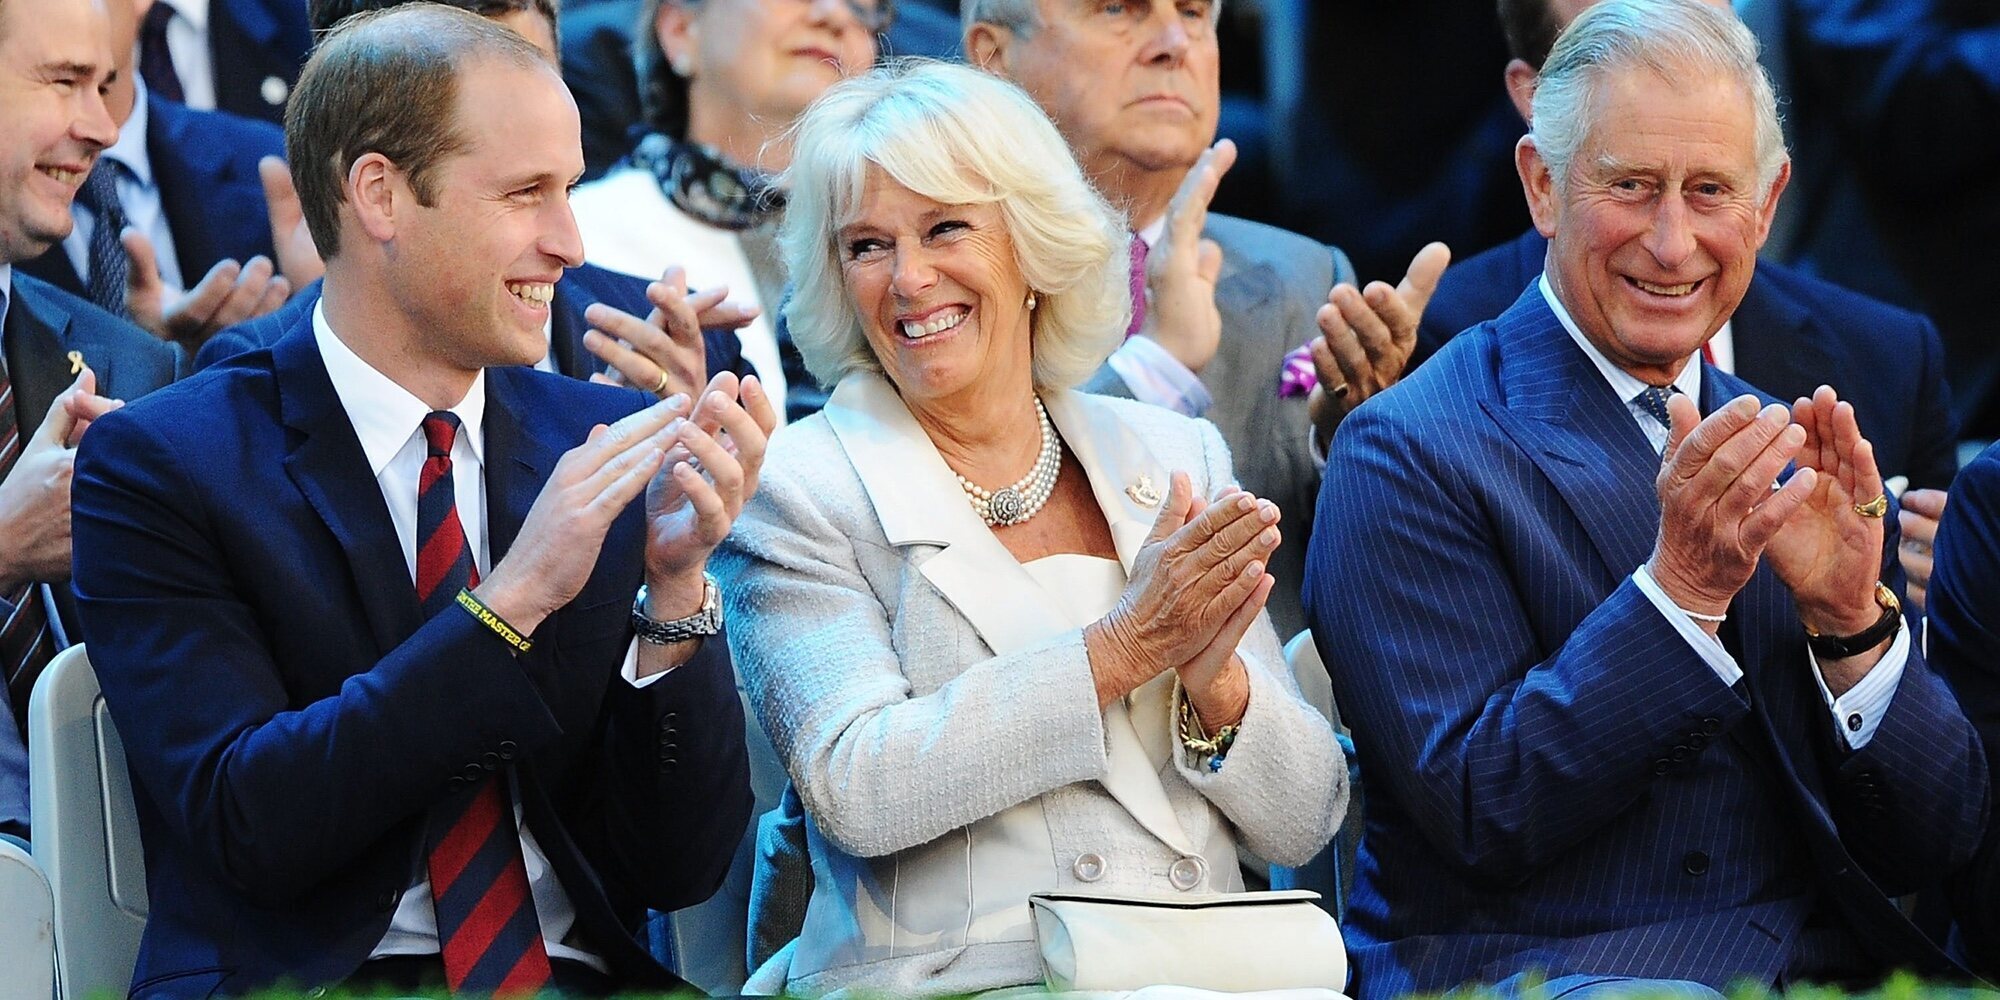 La opinión del Príncipe Guillermo a la decisión de que Camilla sea Reina consorte cuando el Príncipe Carlos sea Rey